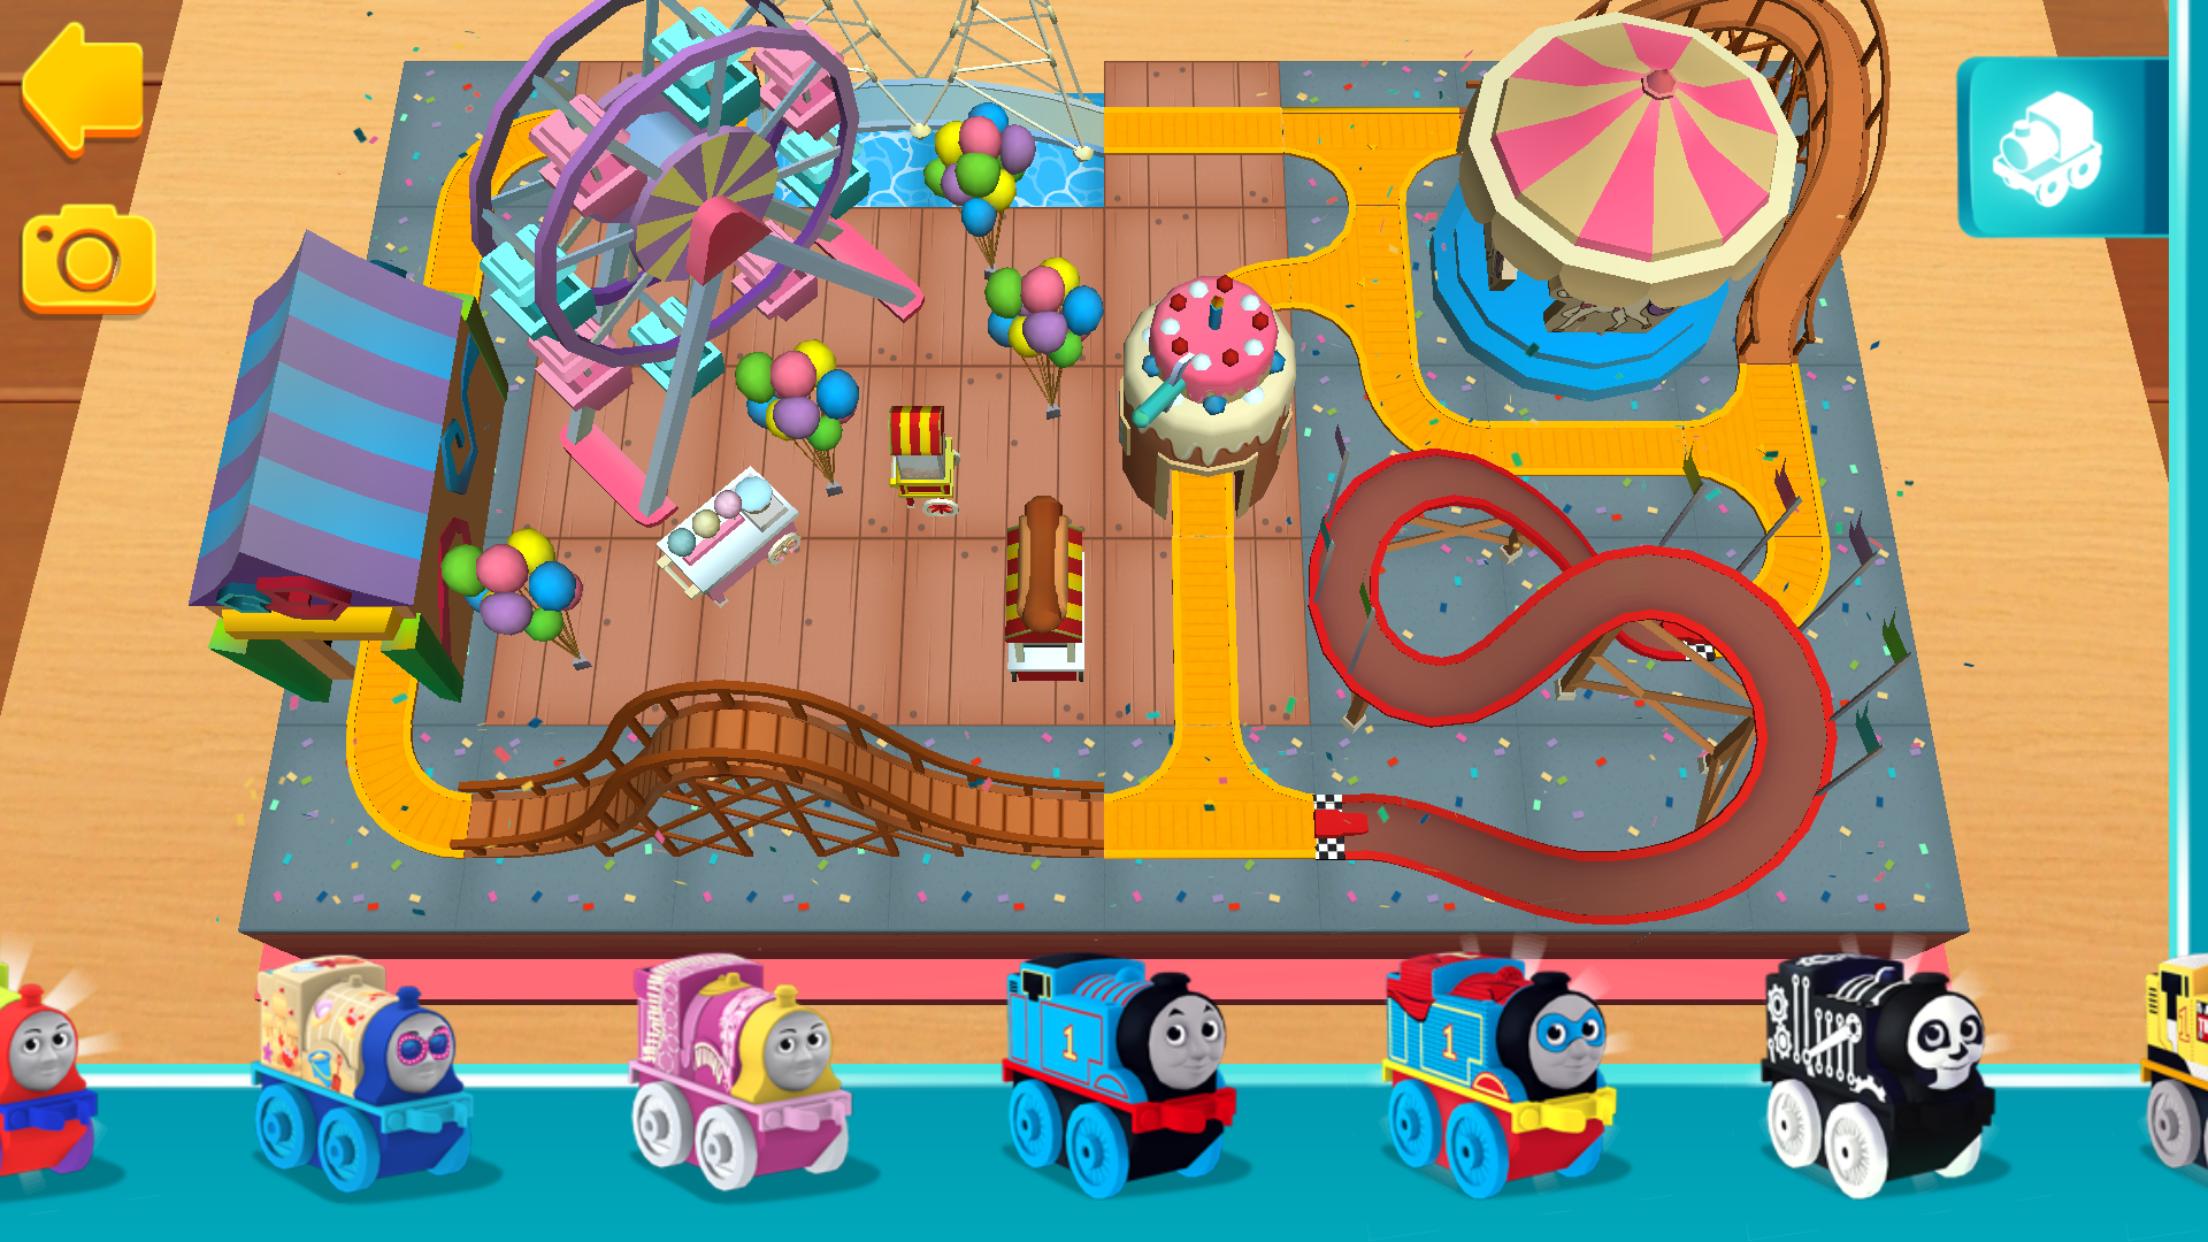 托马斯火车主题儿童生日派对装饰用品火车动画蛋糕插气球拉旗套装-阿里巴巴